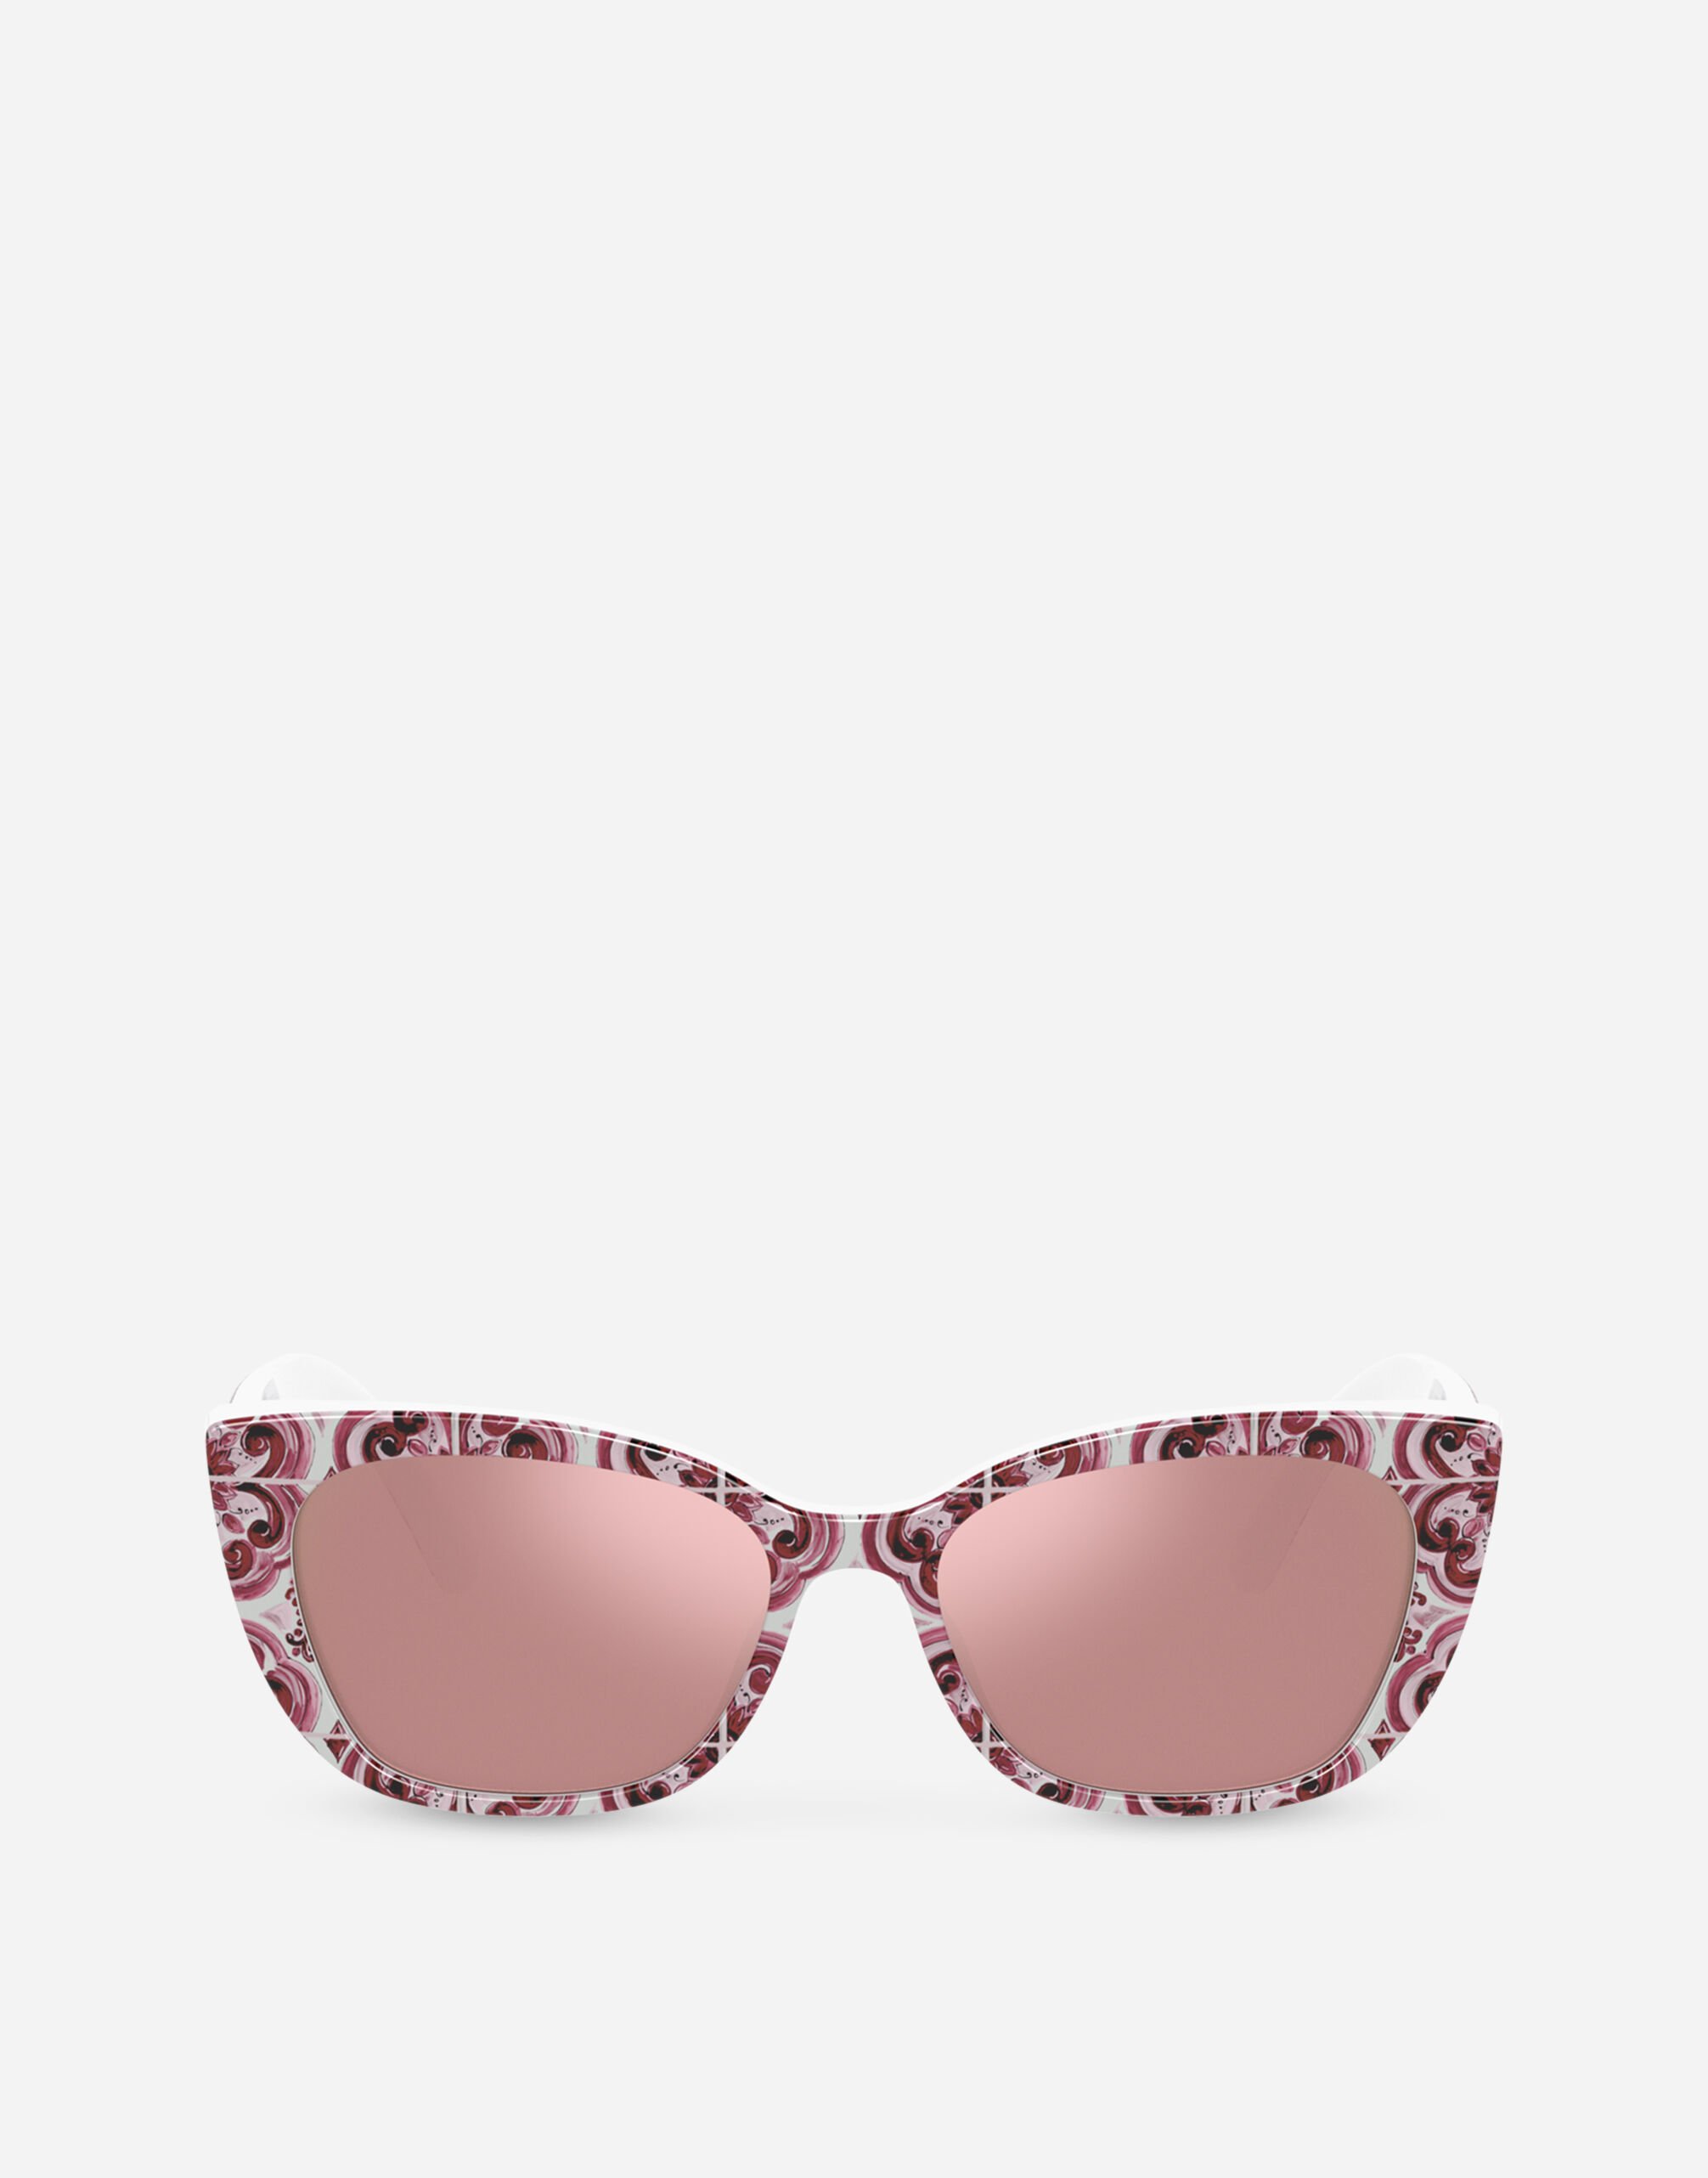 Dolce&Gabbana Maiolica Fucsia Sunglasses Multicolor EB0003AC393